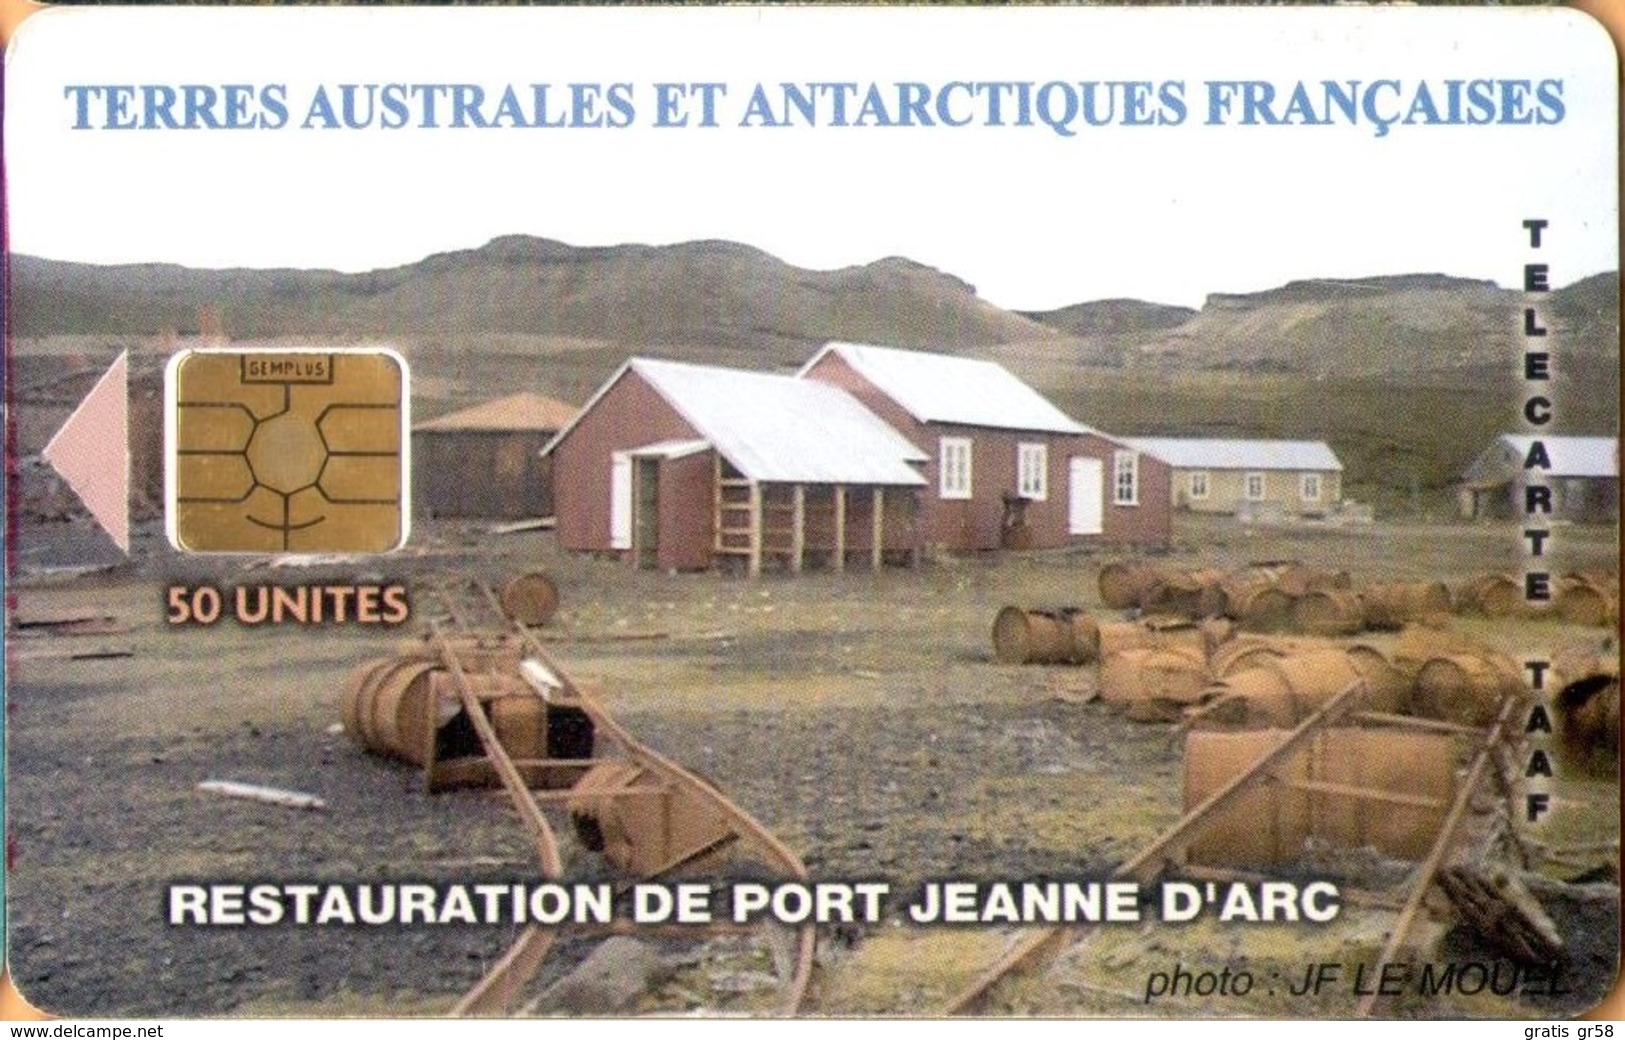 TAAF - TF-STA-0036A, Restauration De Port Jeanne D'Arc, Buildings, 2,700ex, 50 Units, 7/04, Mint? - TAAF - Franse Zuidpoolgewesten